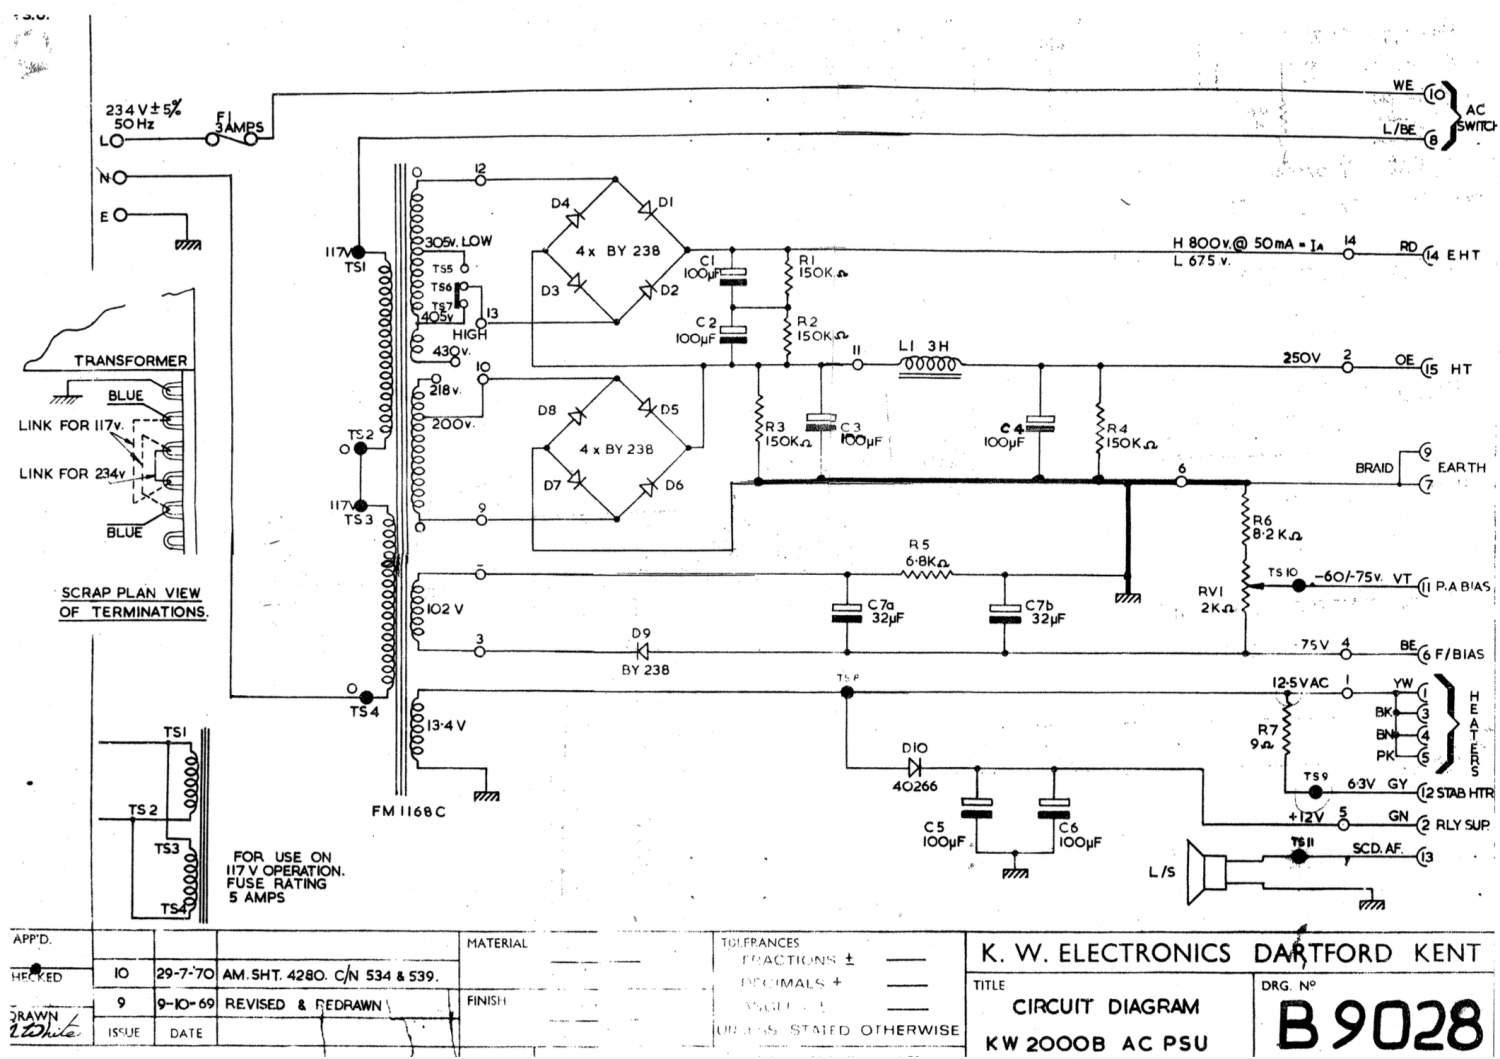 KW-2000B - PSU Schematic Diagram 9028